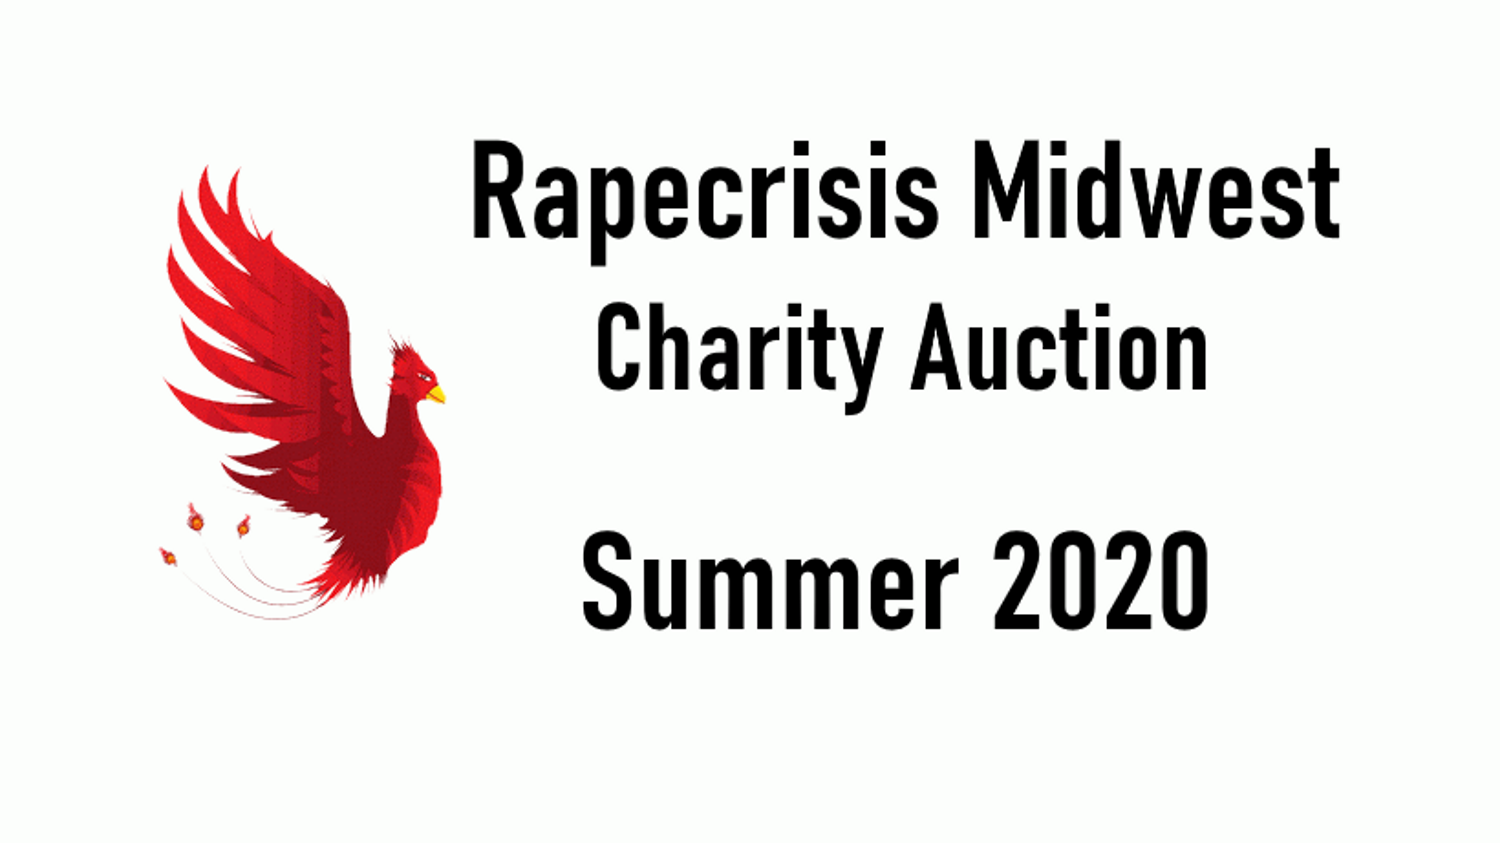 Rape Crisis Midwest charity auction